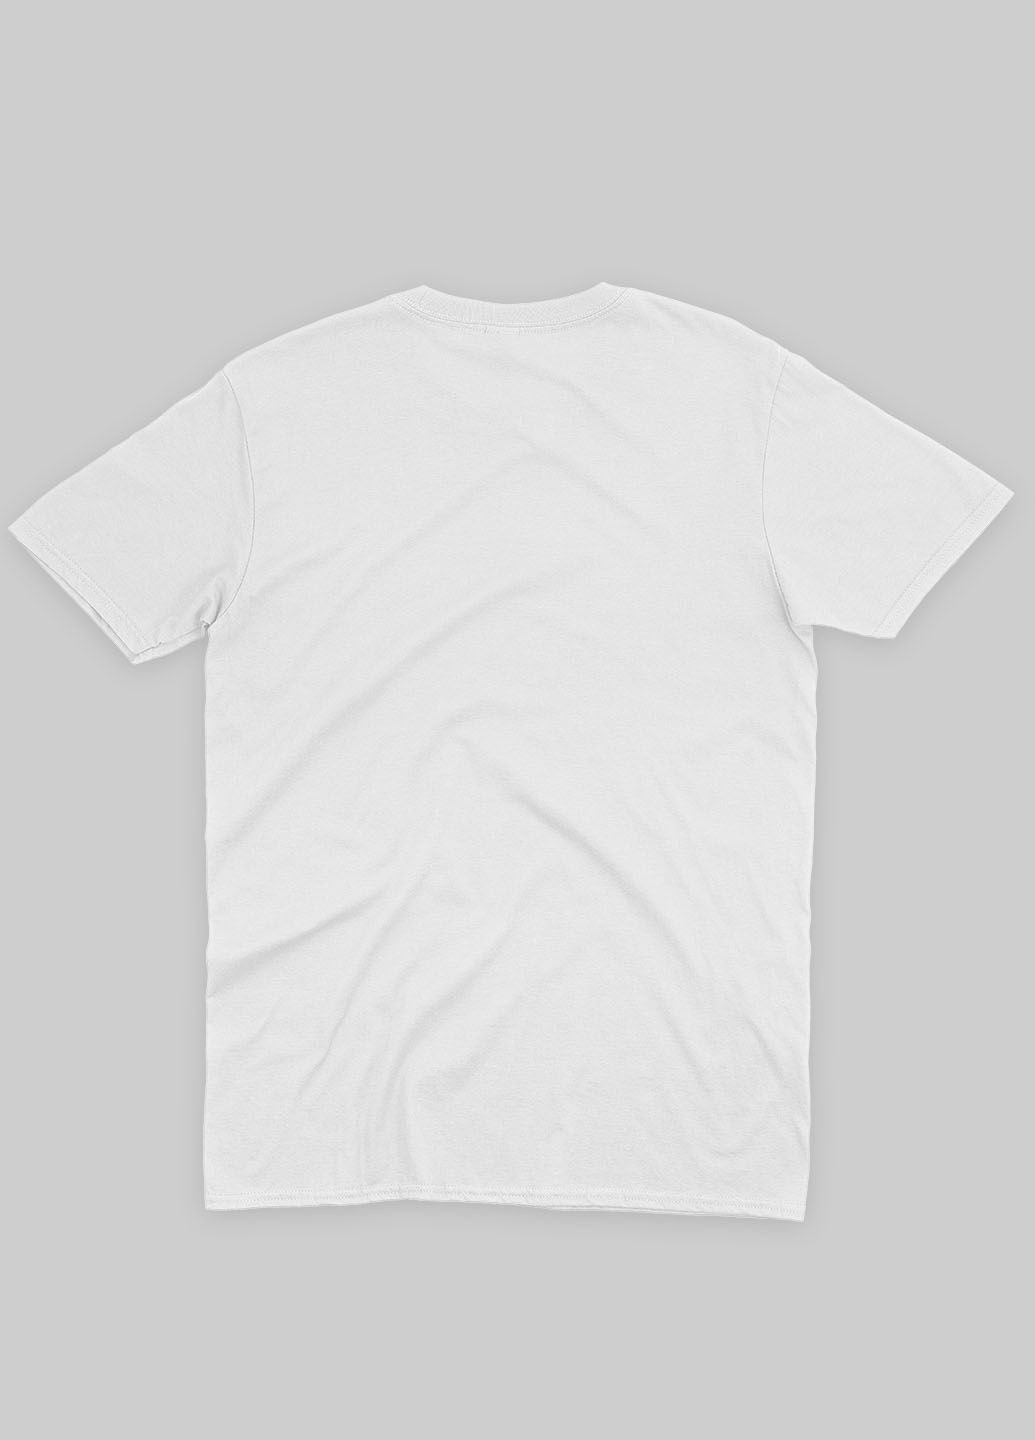 Белая летняя мужская футболка с принтом супервора - веном (ts001-1-whi-006-013-023-f) Modno